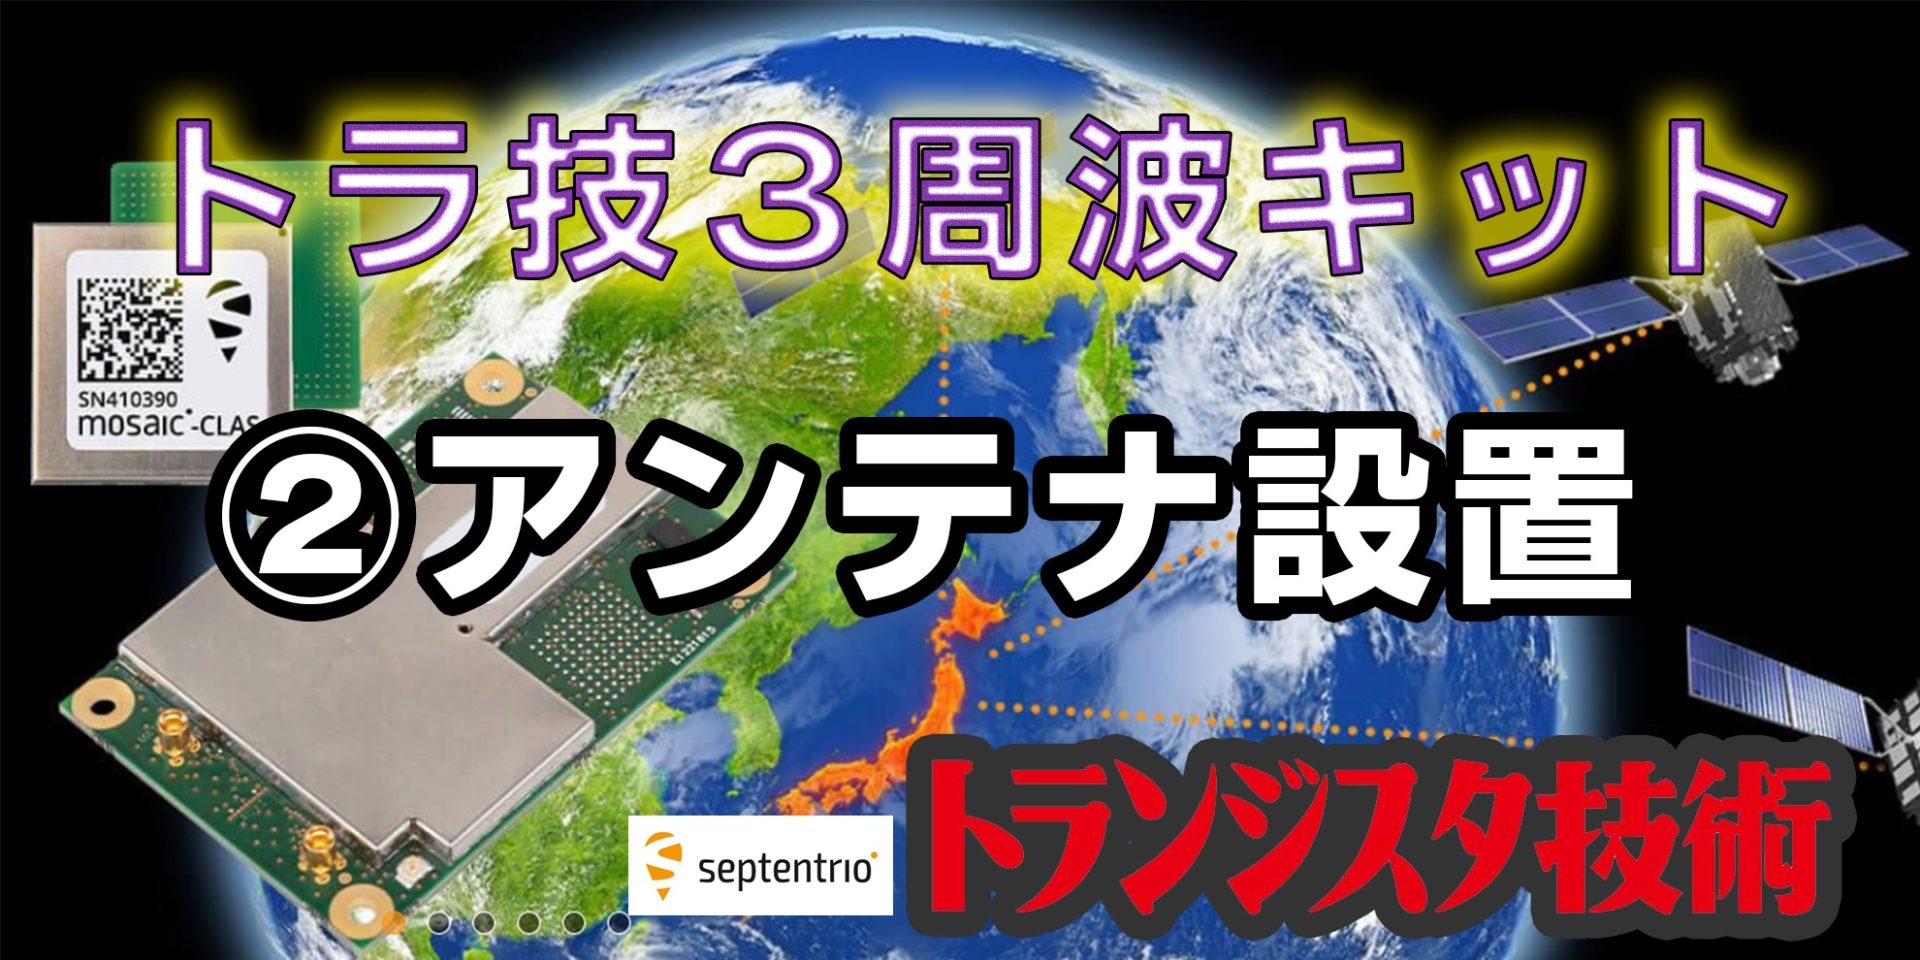 弐-アンテナ設置(septentrio mosaic-x5)トラ技3周波RTKスタータ 